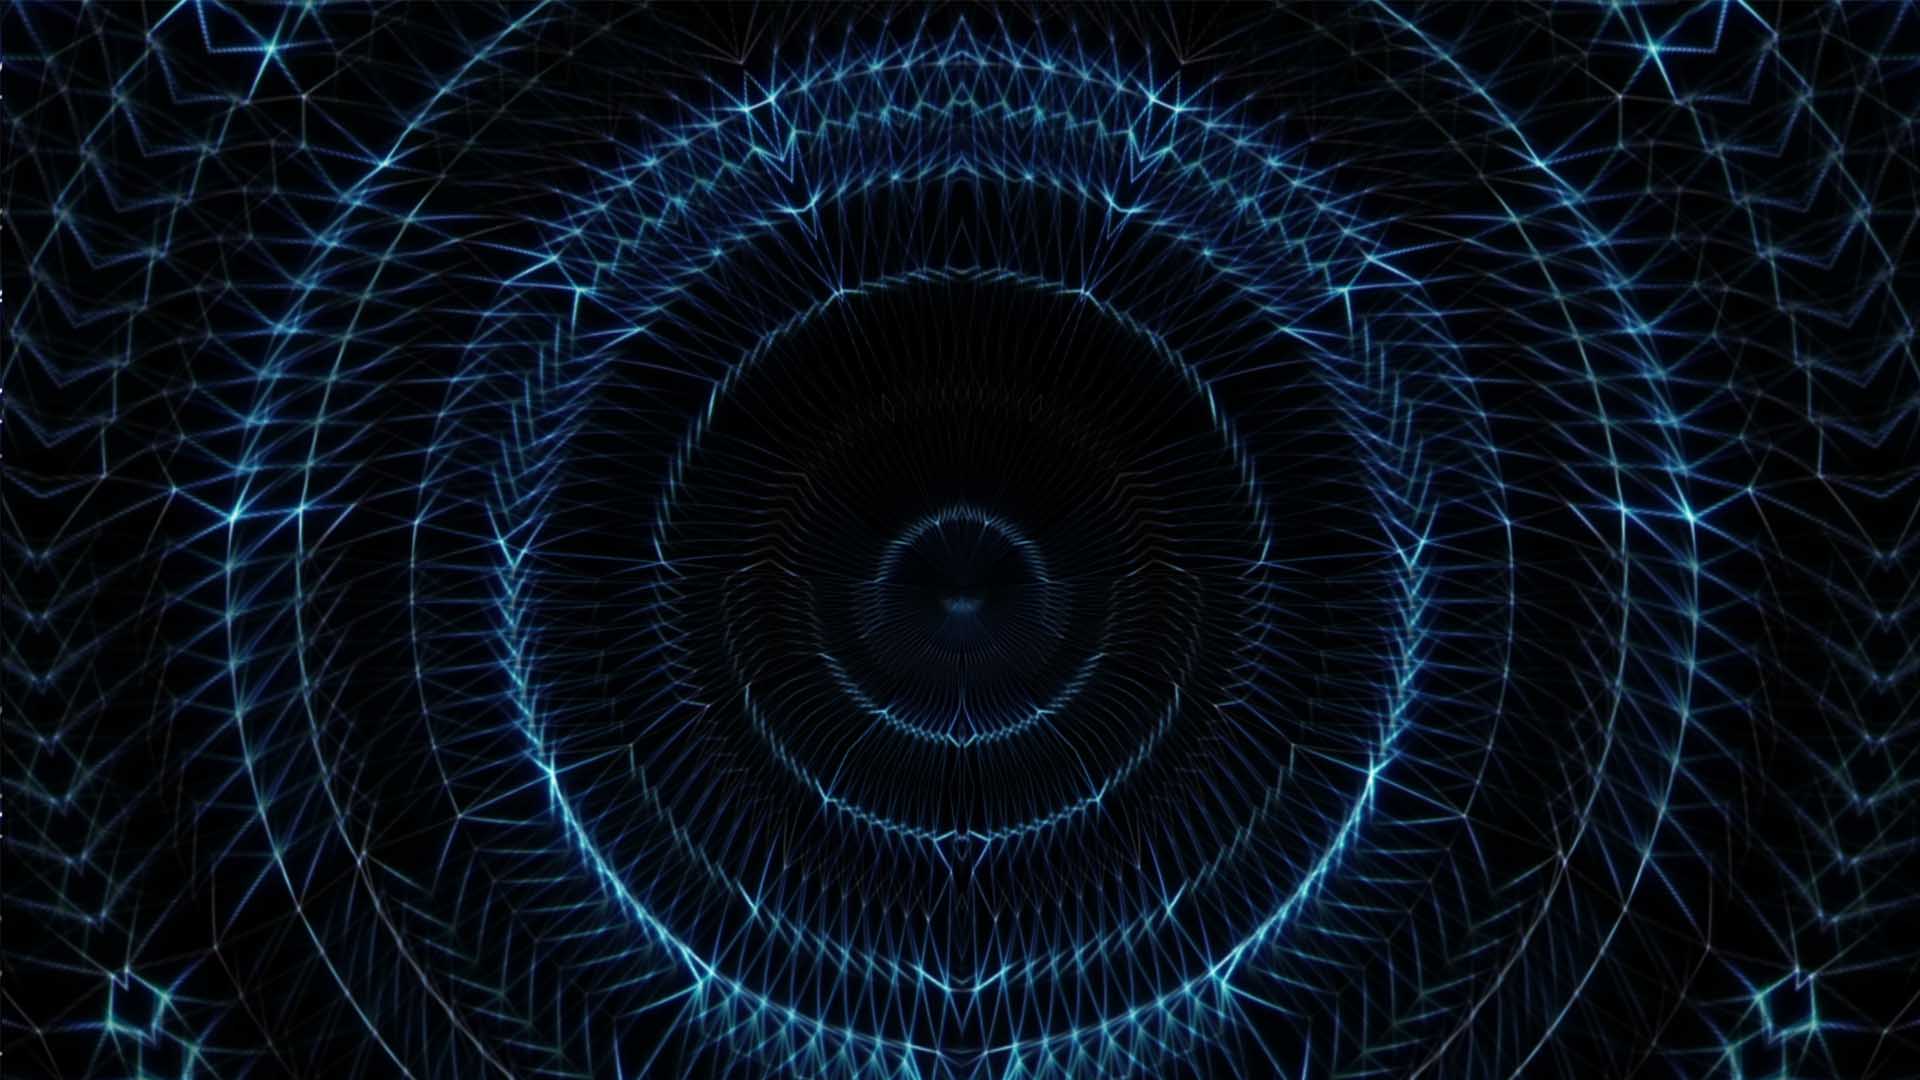 Blue lines Vj loop video wallpaper polygonal background